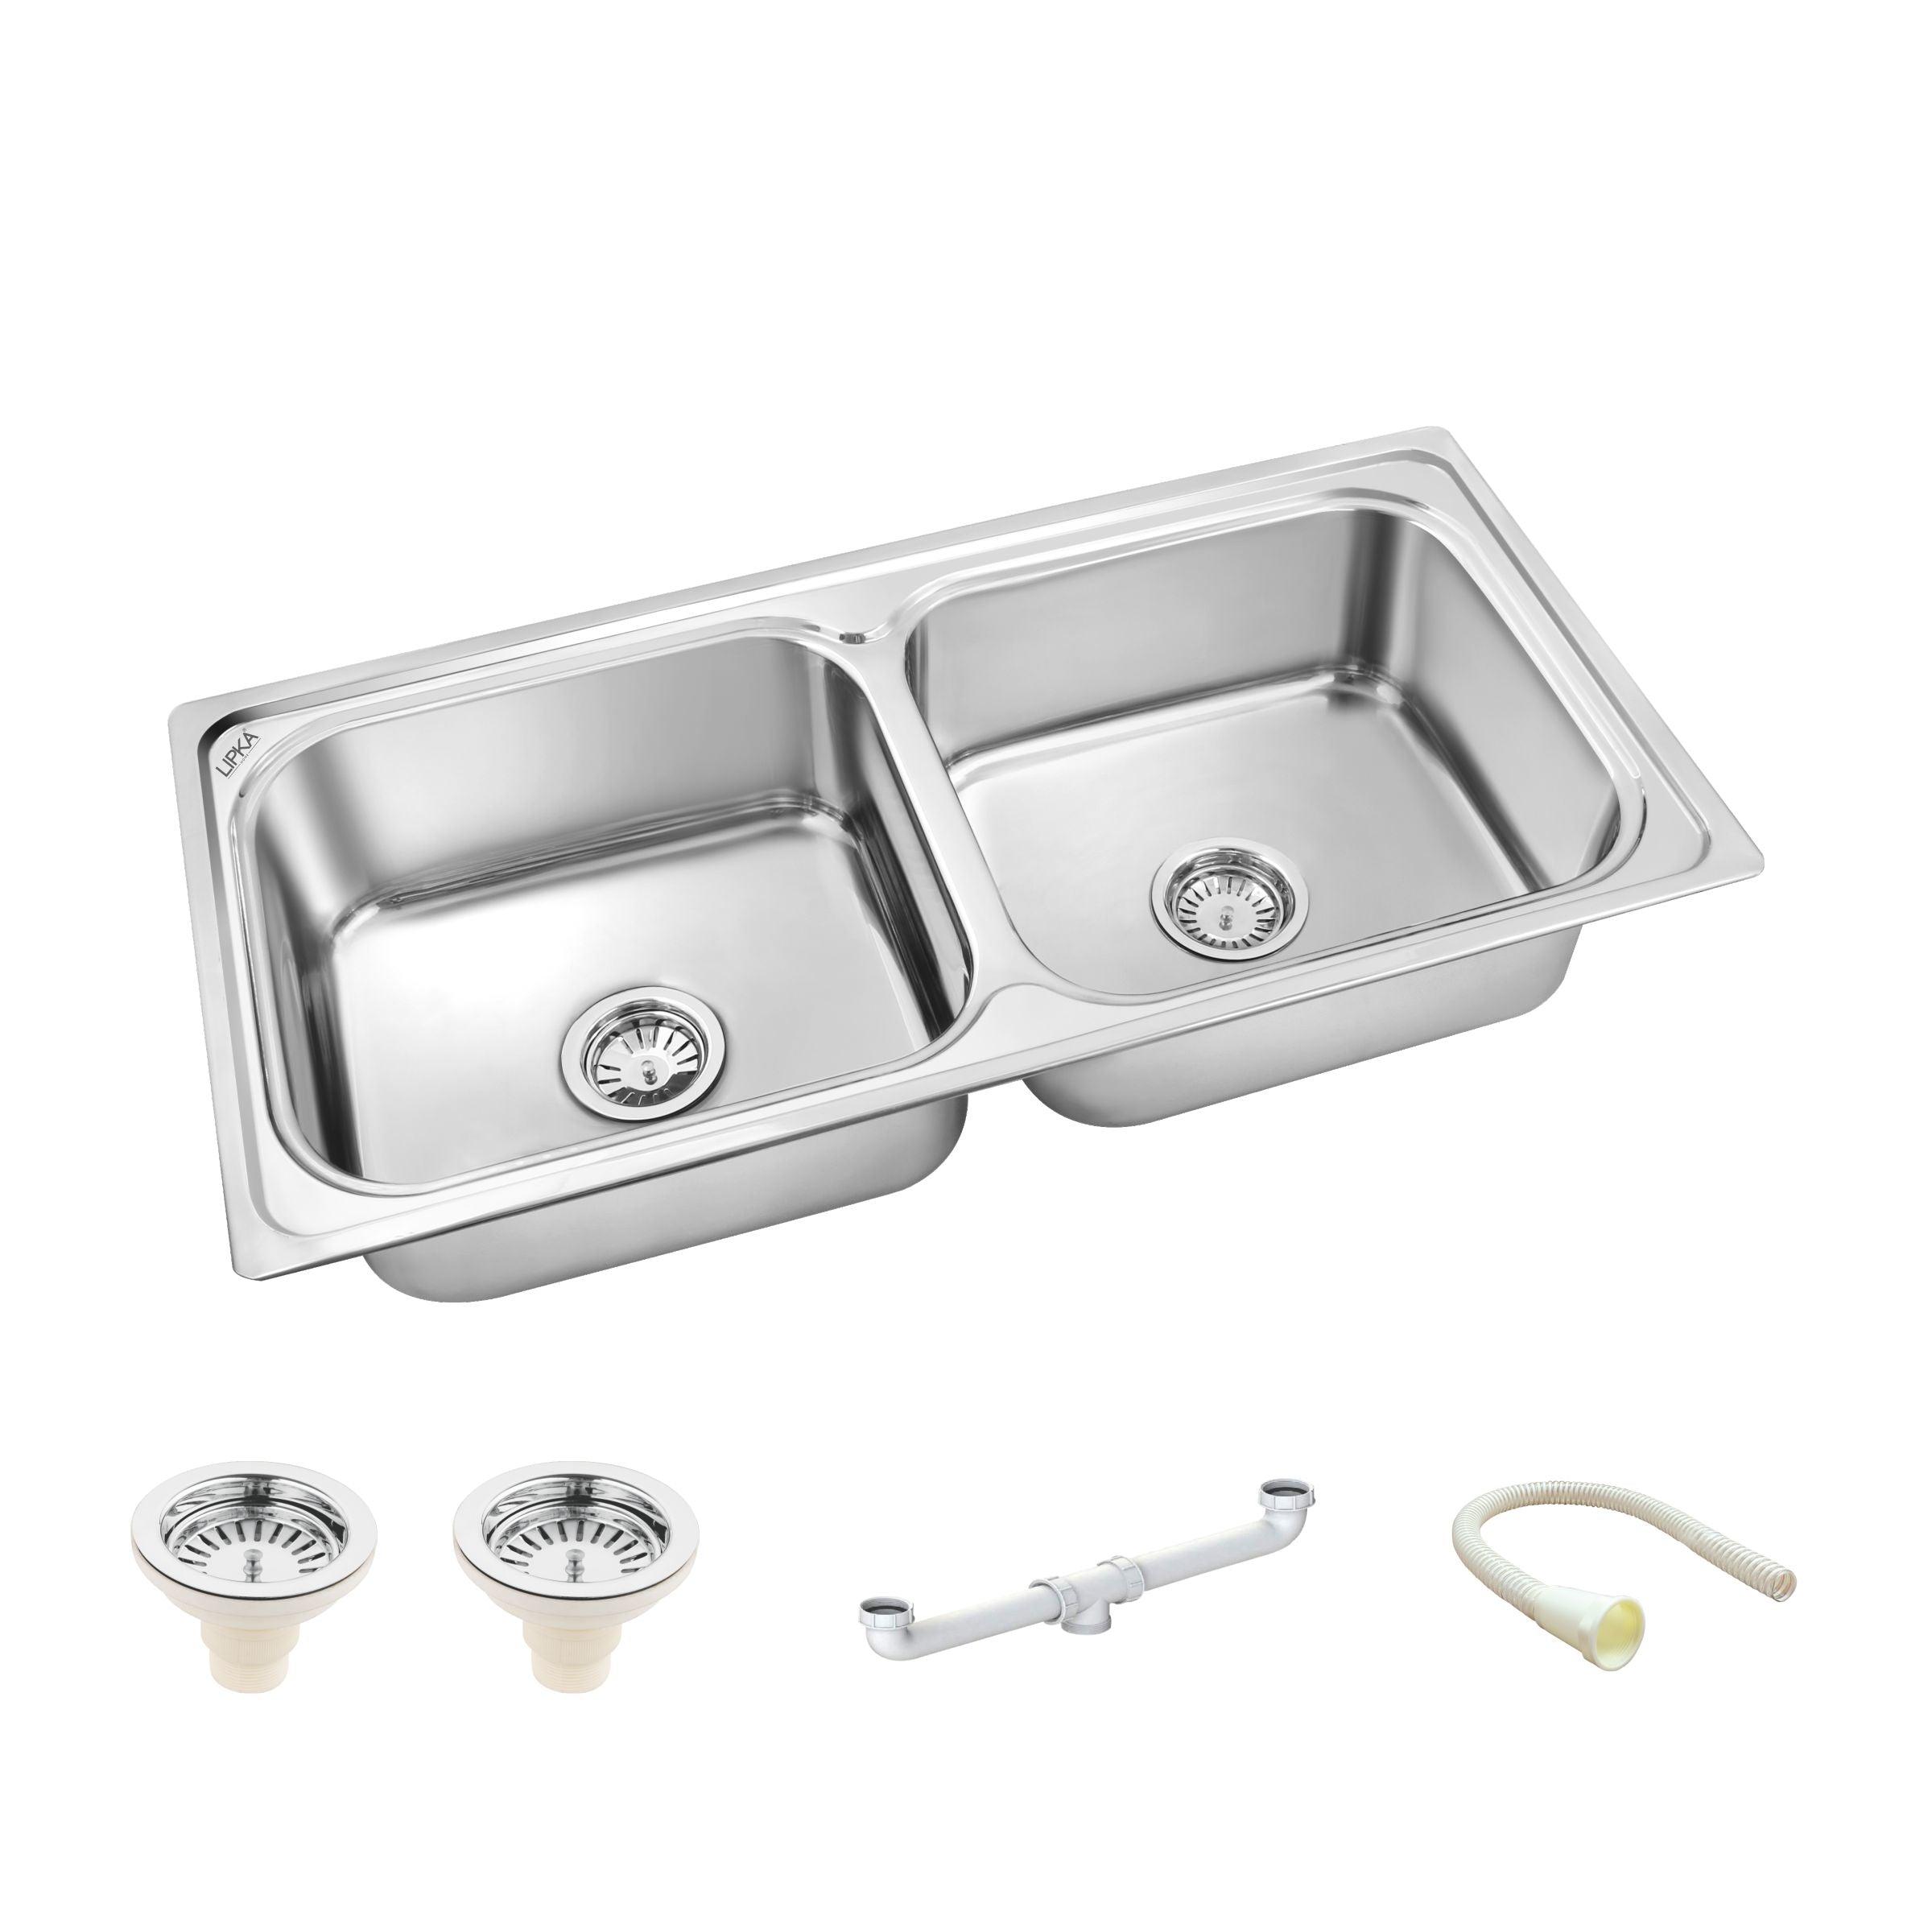 Square Double Bowl Kitchen Sink (37 x 18 x 8 Inches) - LIPKA - Lipka Home